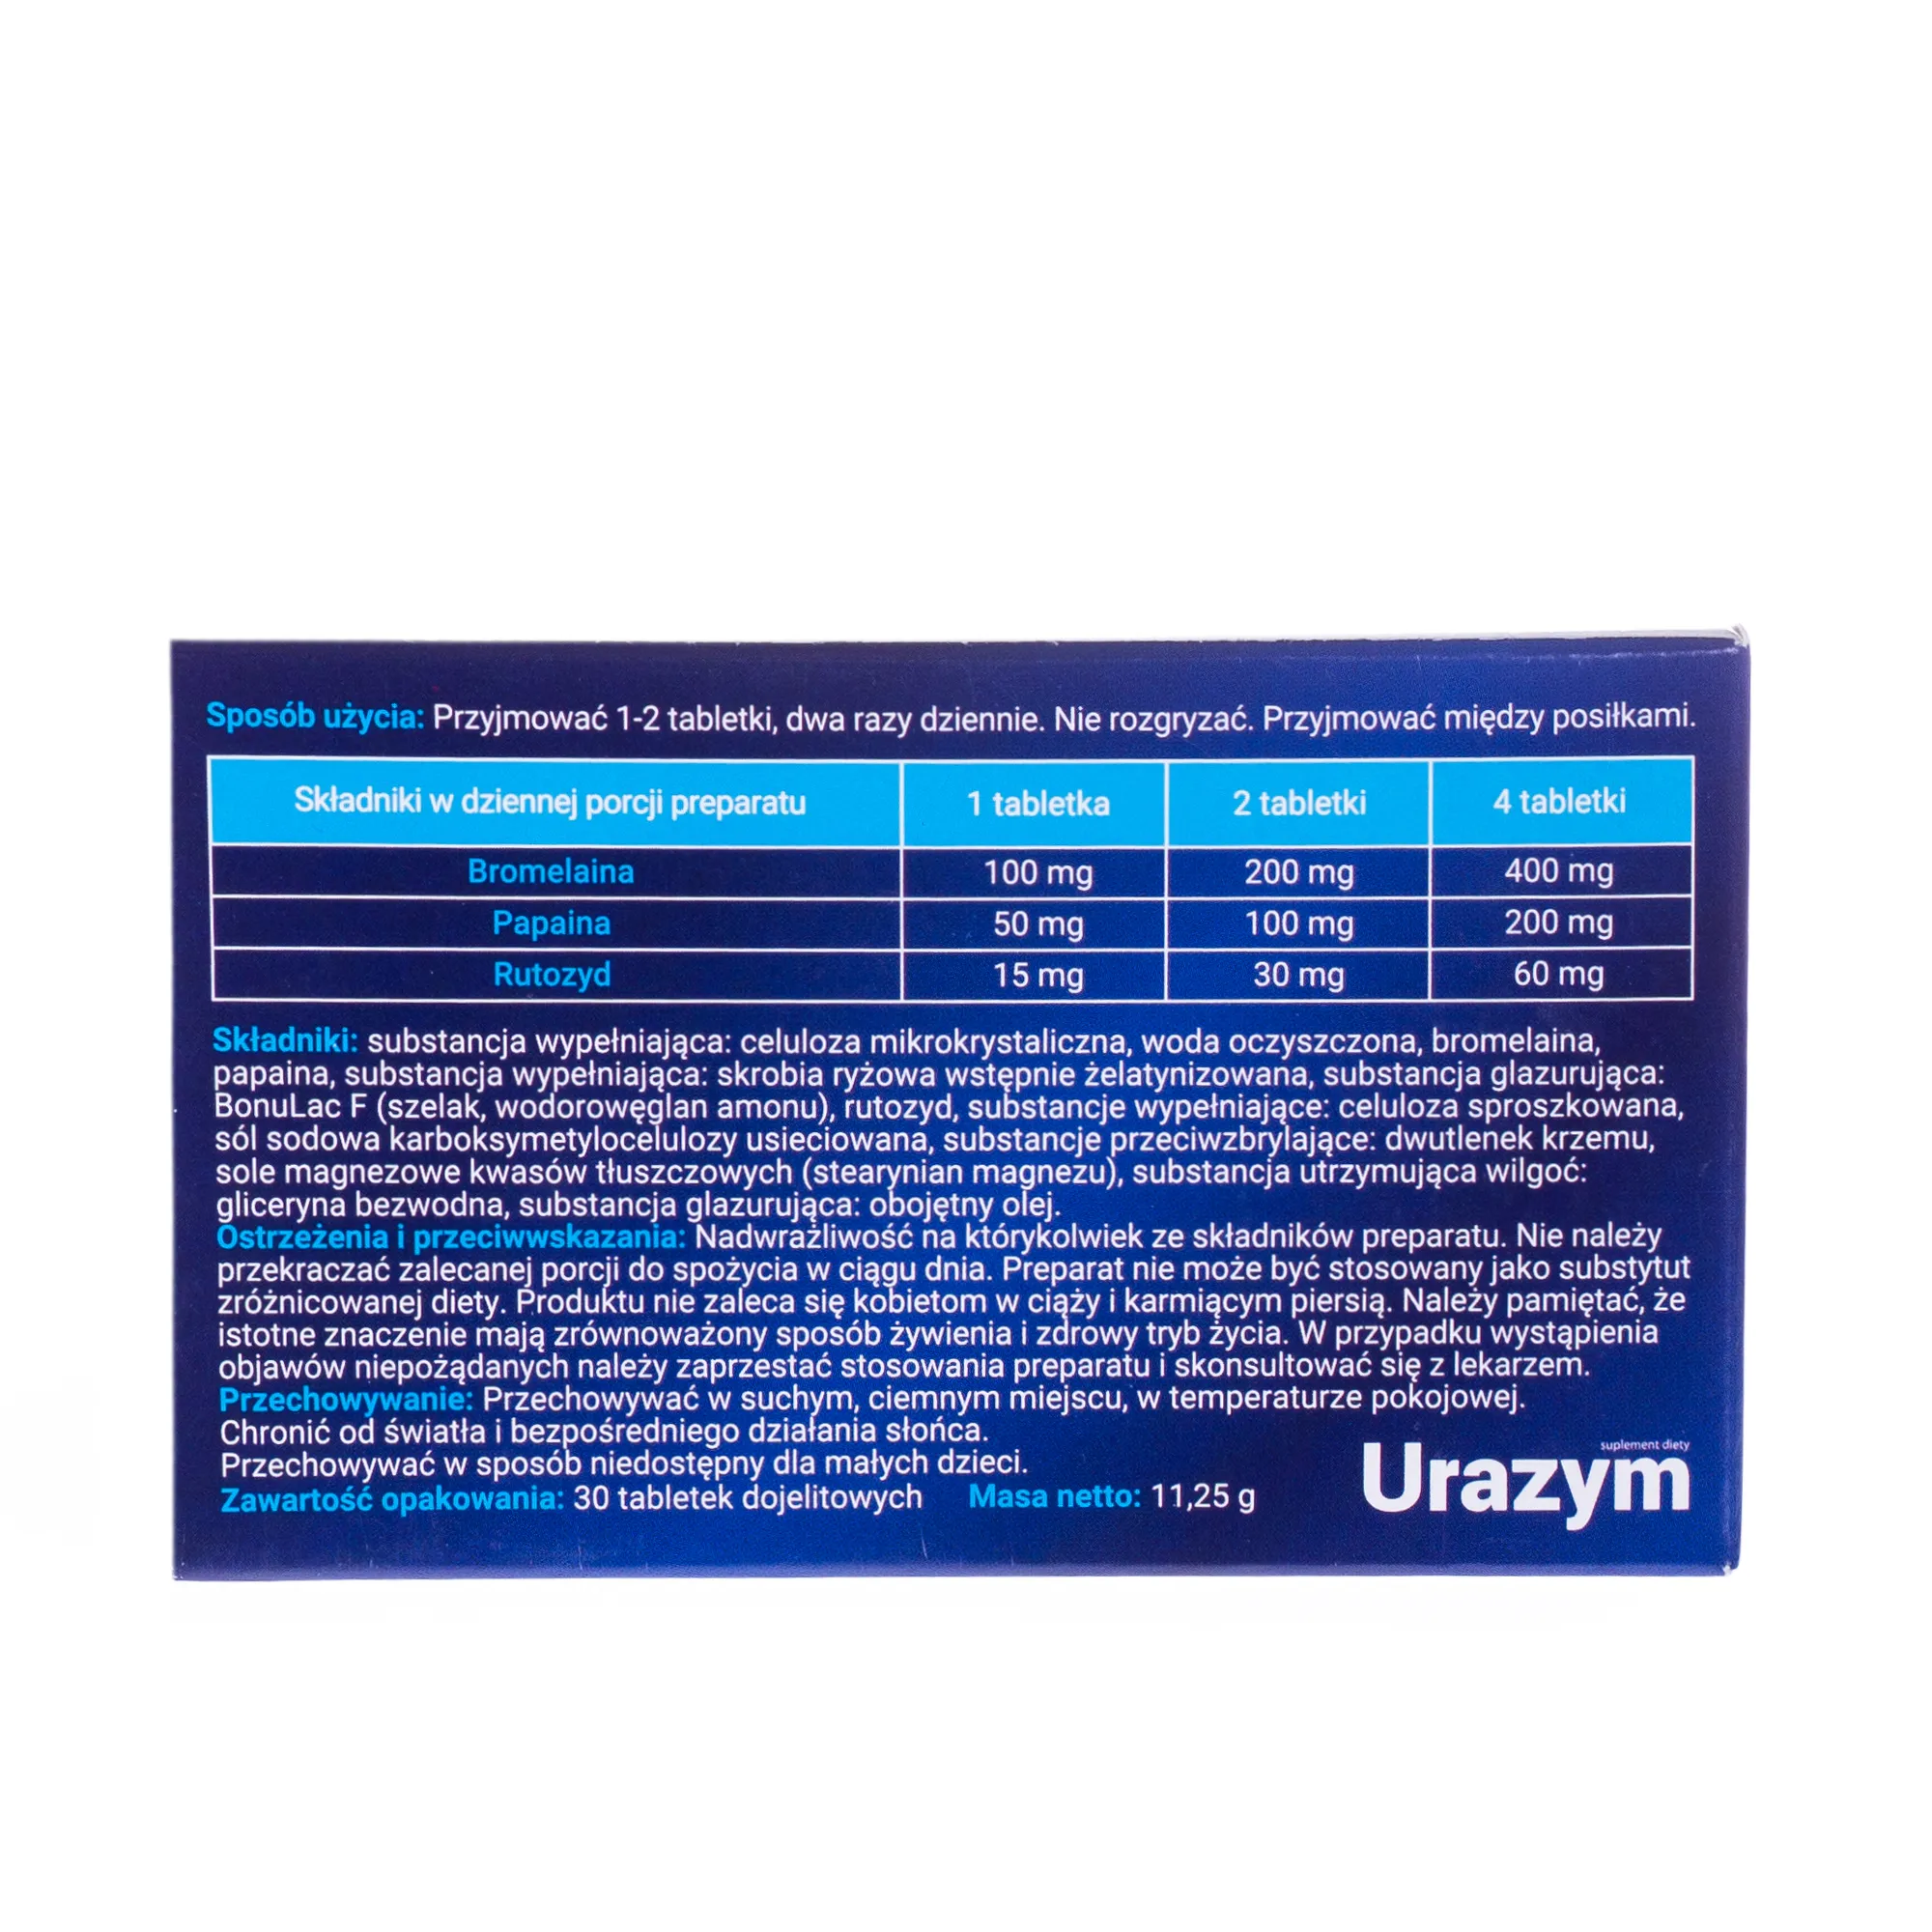 Urazym, suplement diety, 30 tabletek 